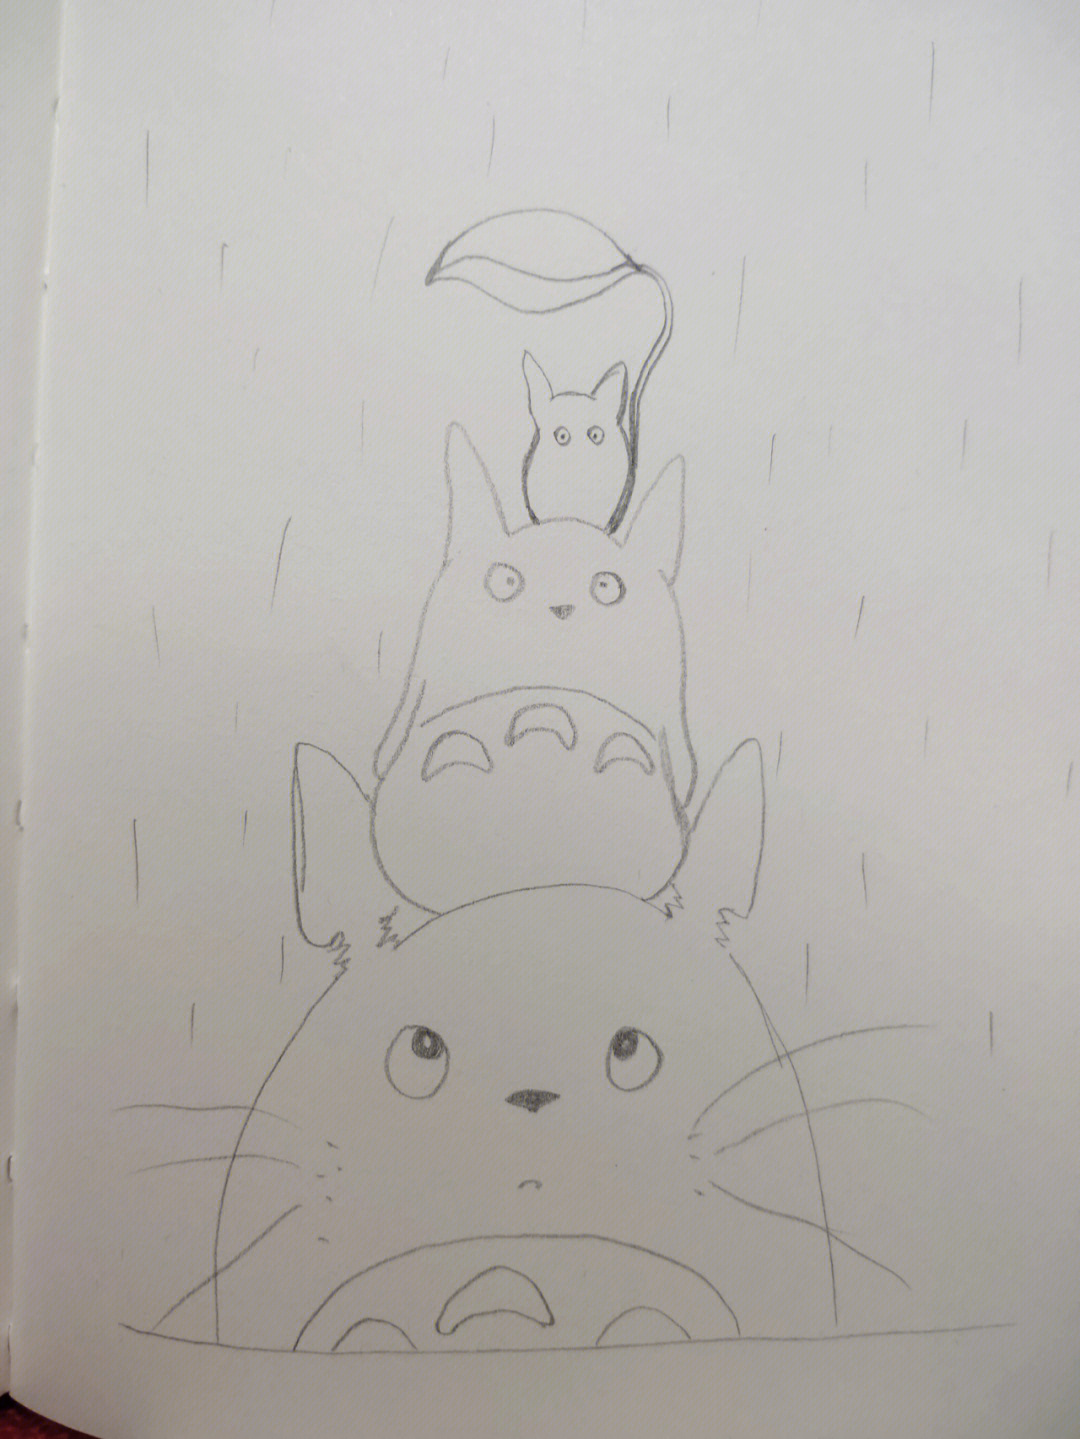 好喜欢宫崎骏的动漫,临摹的龙猫,用铅笔跟着图片随意描的,画的真的